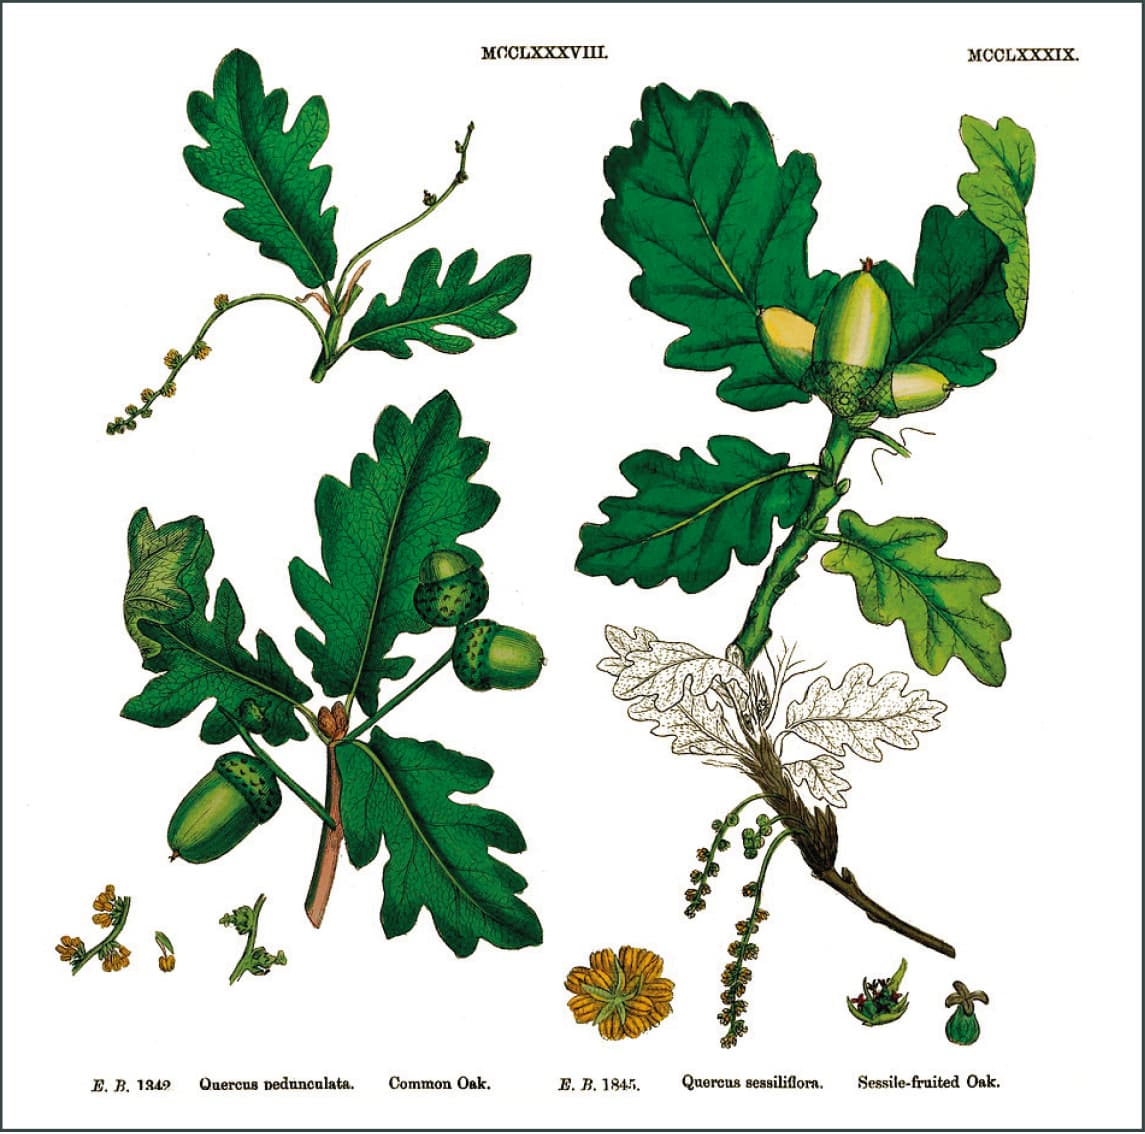 Figure 1: The pedunculate oak